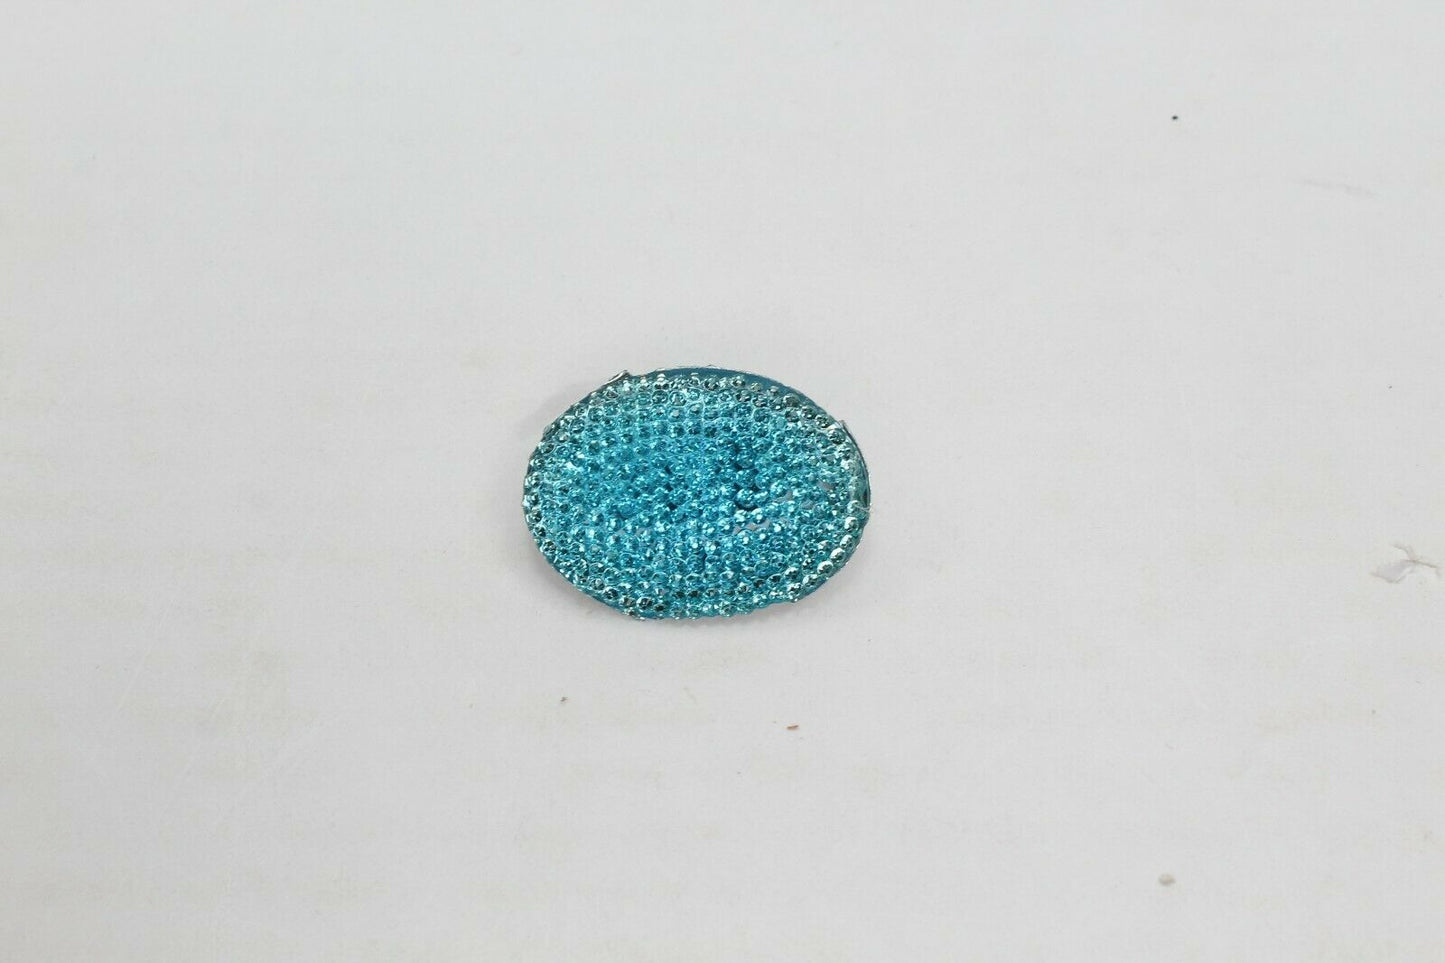 Ovel Safety Pins Crystal Brooch Pin Hijab Pin